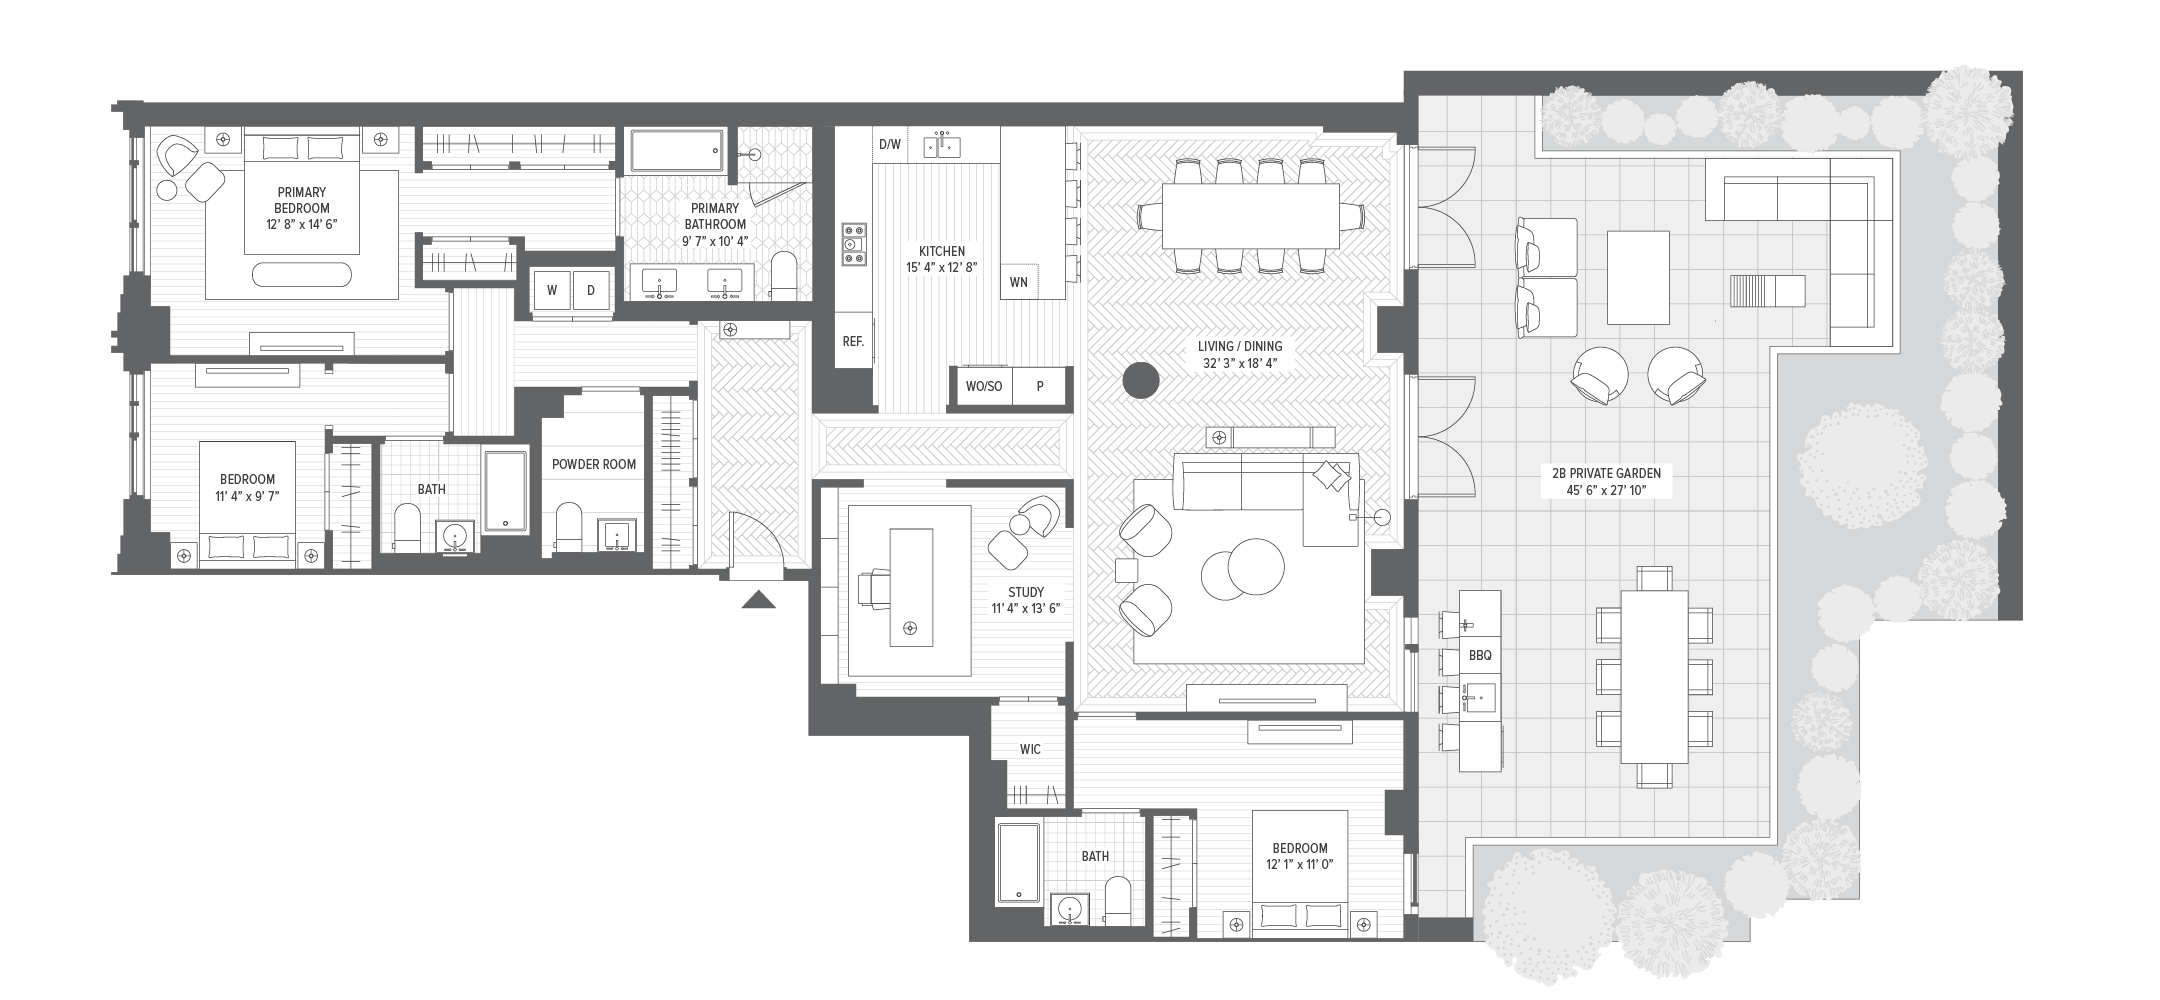 Unit 2B floorplan